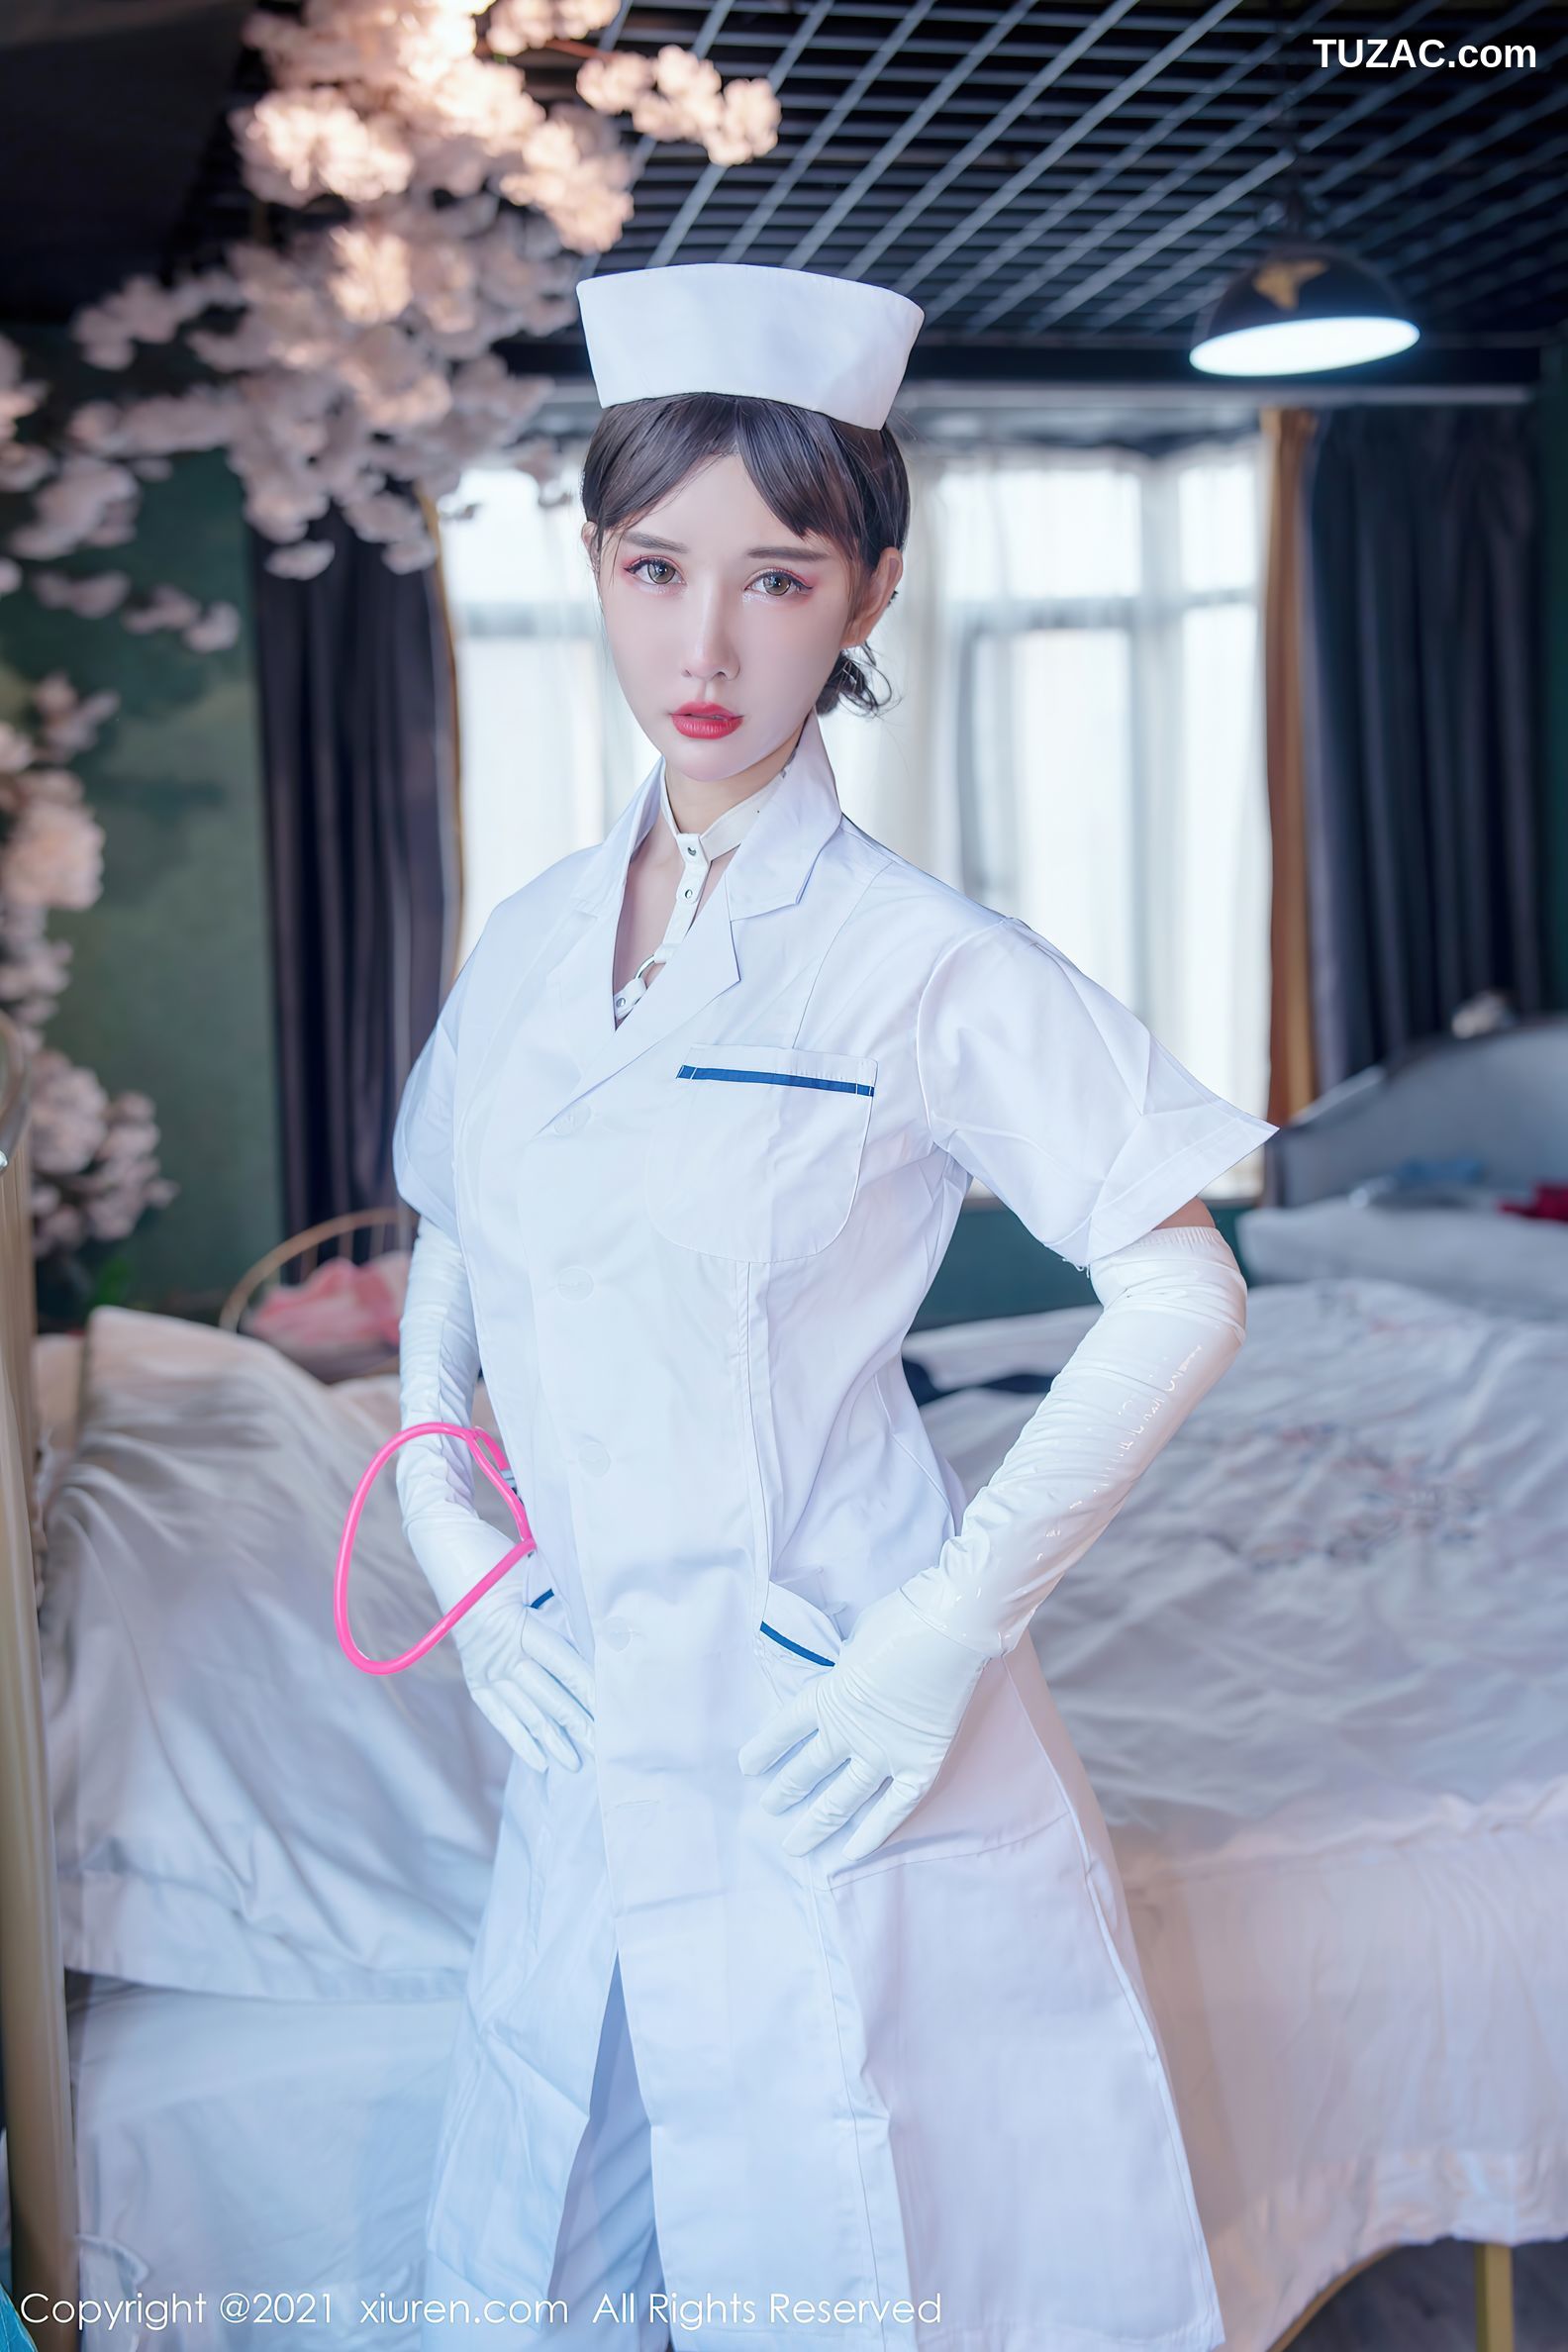 模特波巧酱脱白色护士服露性感白色内衣配白丝袜极致魅惑写真